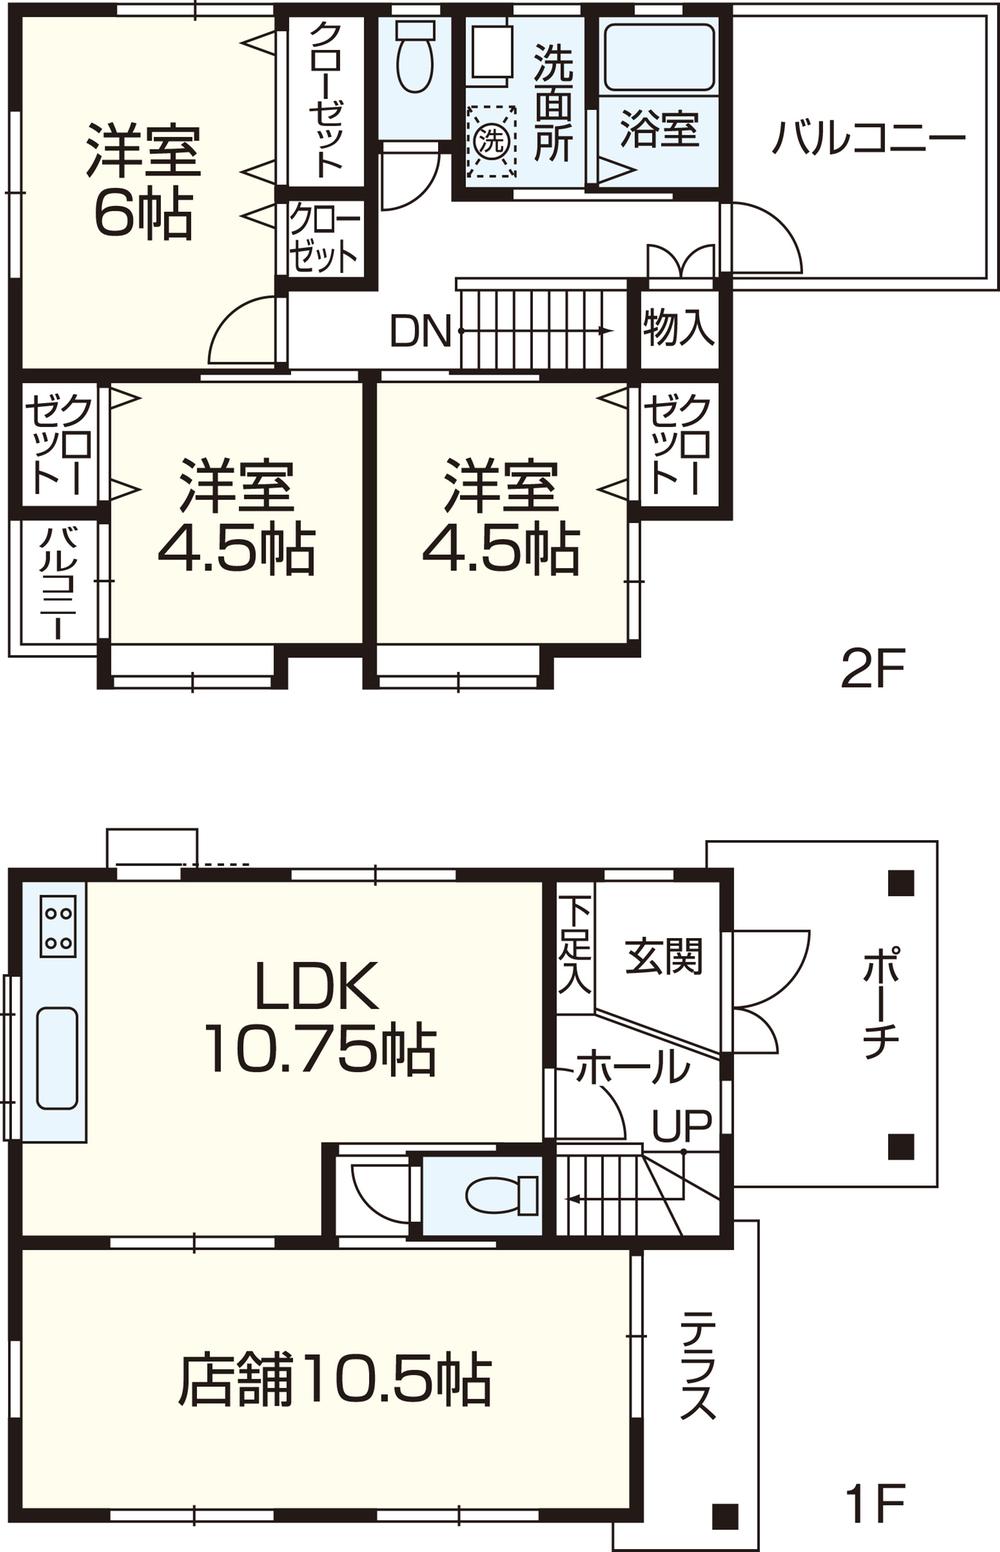 Floor plan. 6.7 million yen, 3LDK, Land area 121.21 sq m , Building area 85.86 sq m